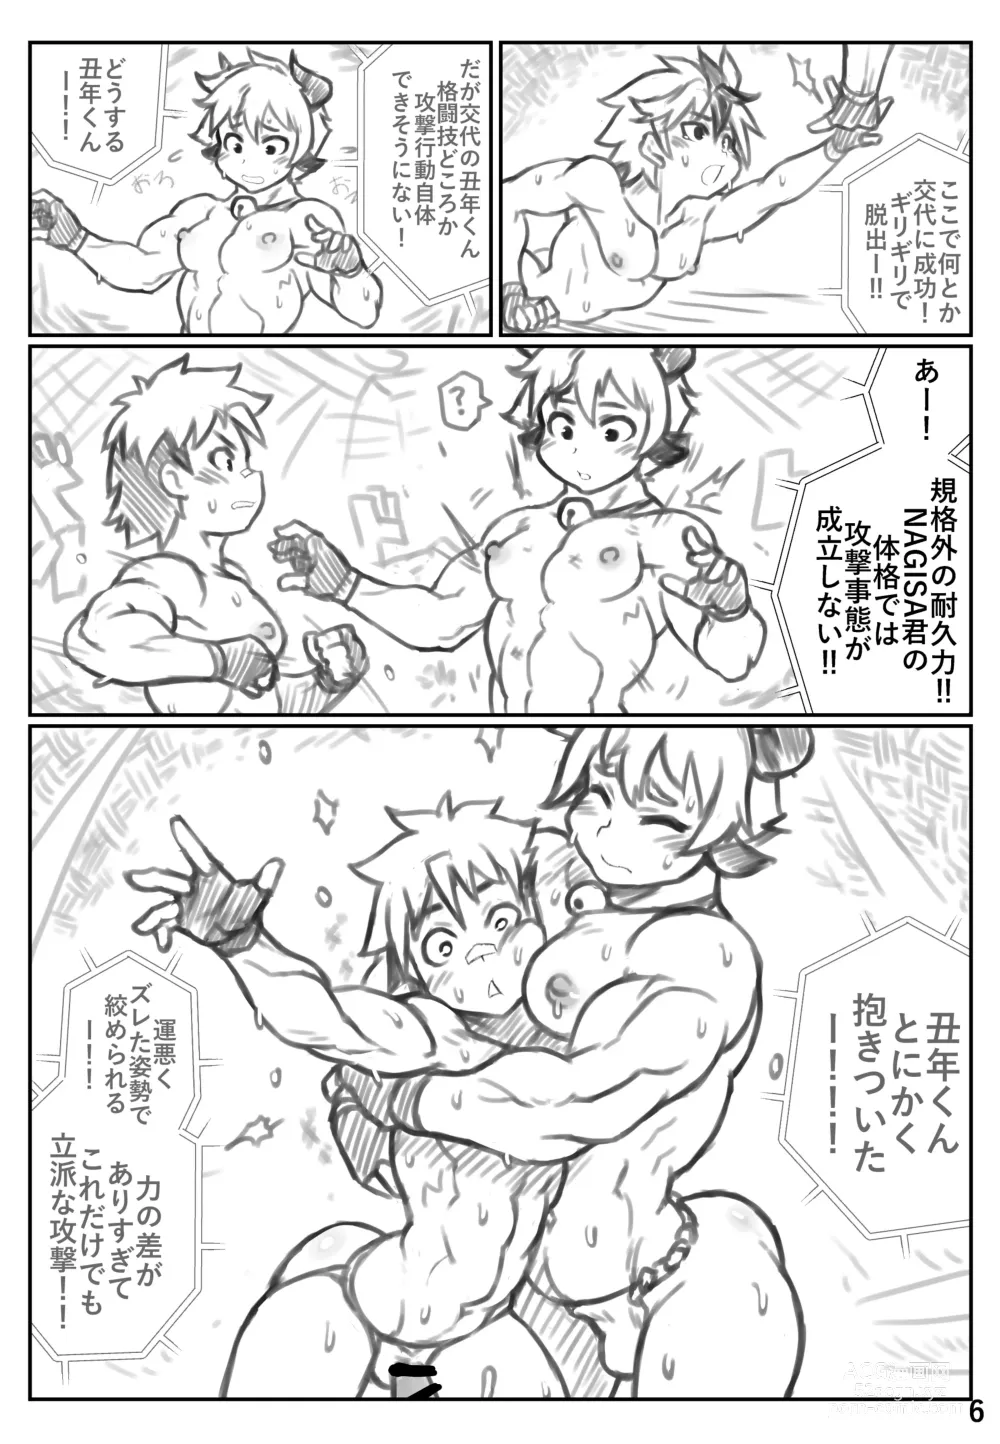 Page 5 of doujinshi Puroresu ♂ o yattenai nanika